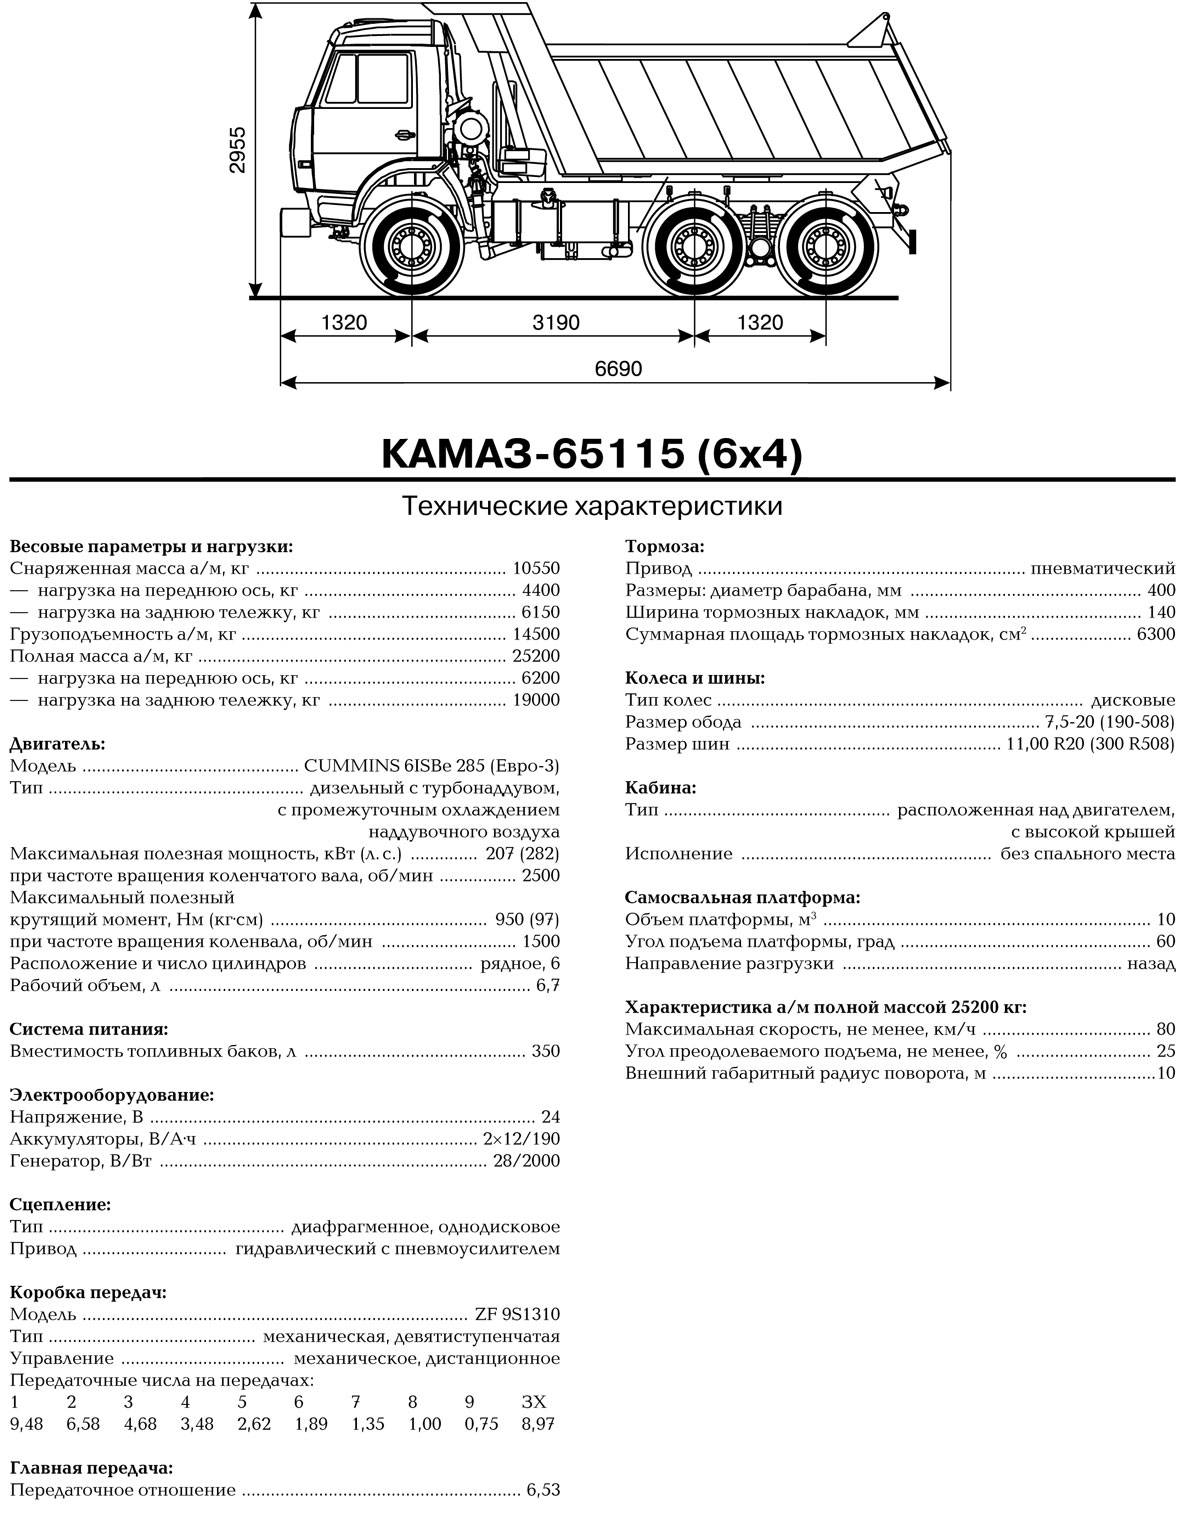 Камаз 55111 объем. КАМАЗ 65115 самосвал технические характеристики. КАМАЗ 65115 самосвал спецификация. ТТХ КАМАЗ 65115 самосвал. КАМАЗ 65115 технические характеристики технические.